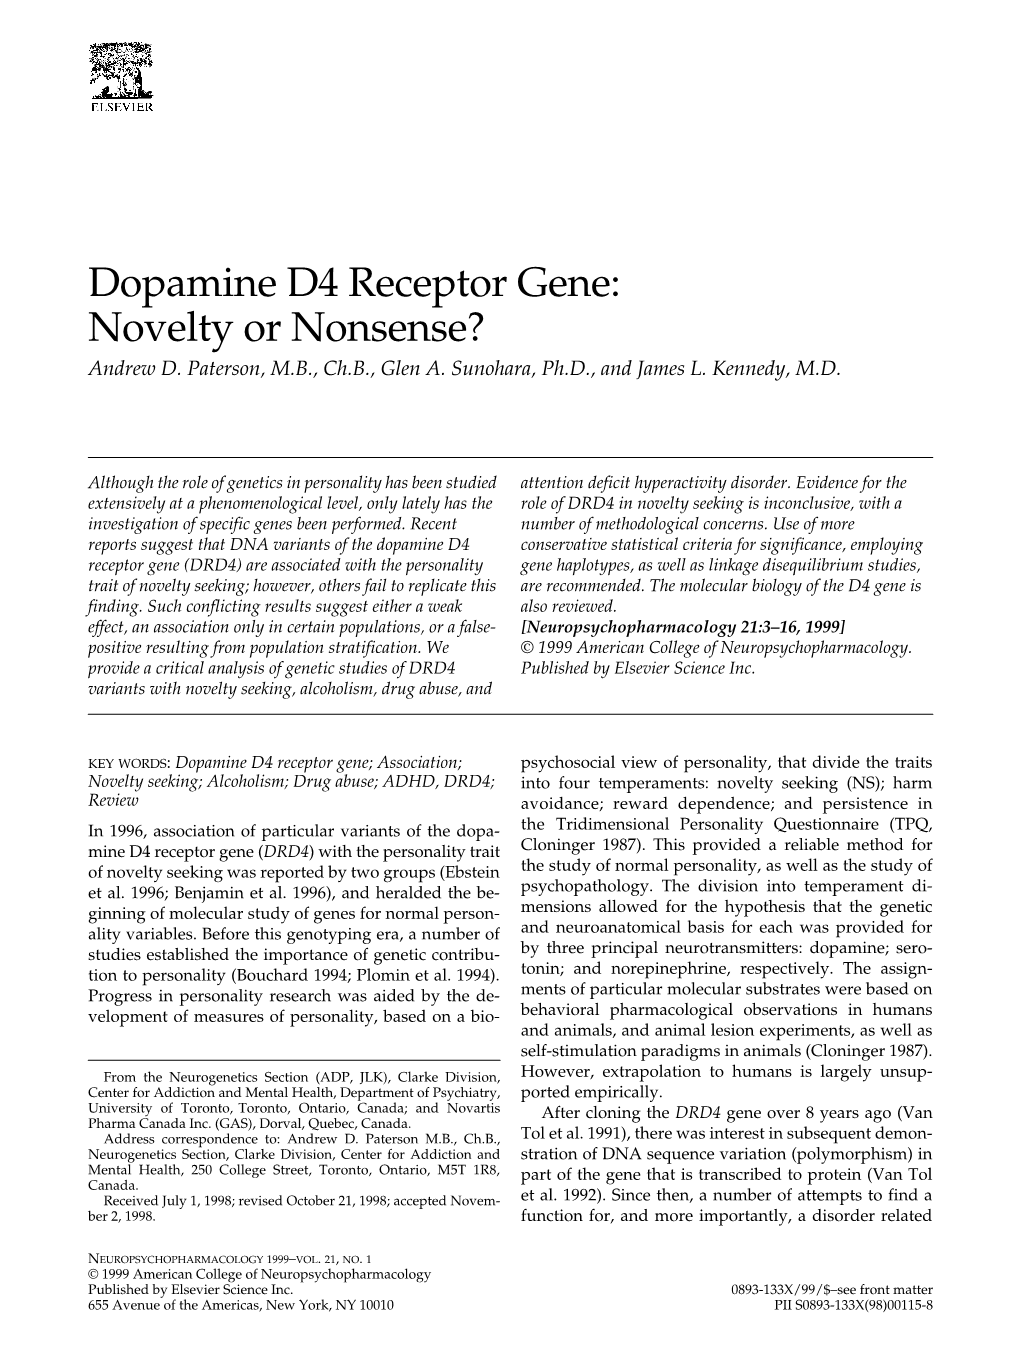 Dopamine D4 Receptor Gene: Novelty Or Nonsense? Andrew D